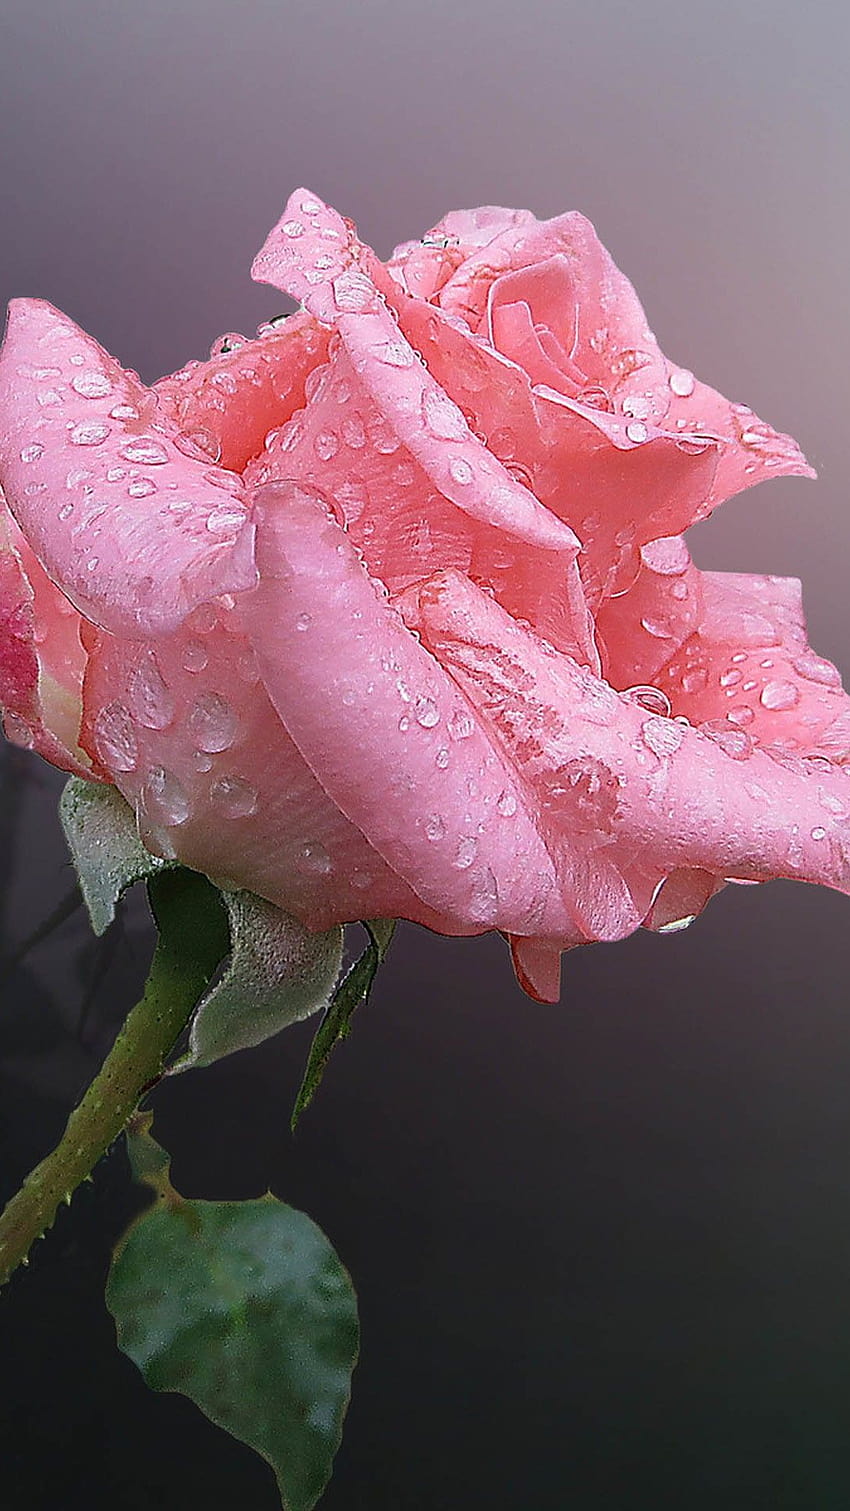 Bunga Mawar Cina Merah Muda Dengan Tetesan Air iPhone 8, tetesan airnya naik wallpaper ponsel HD